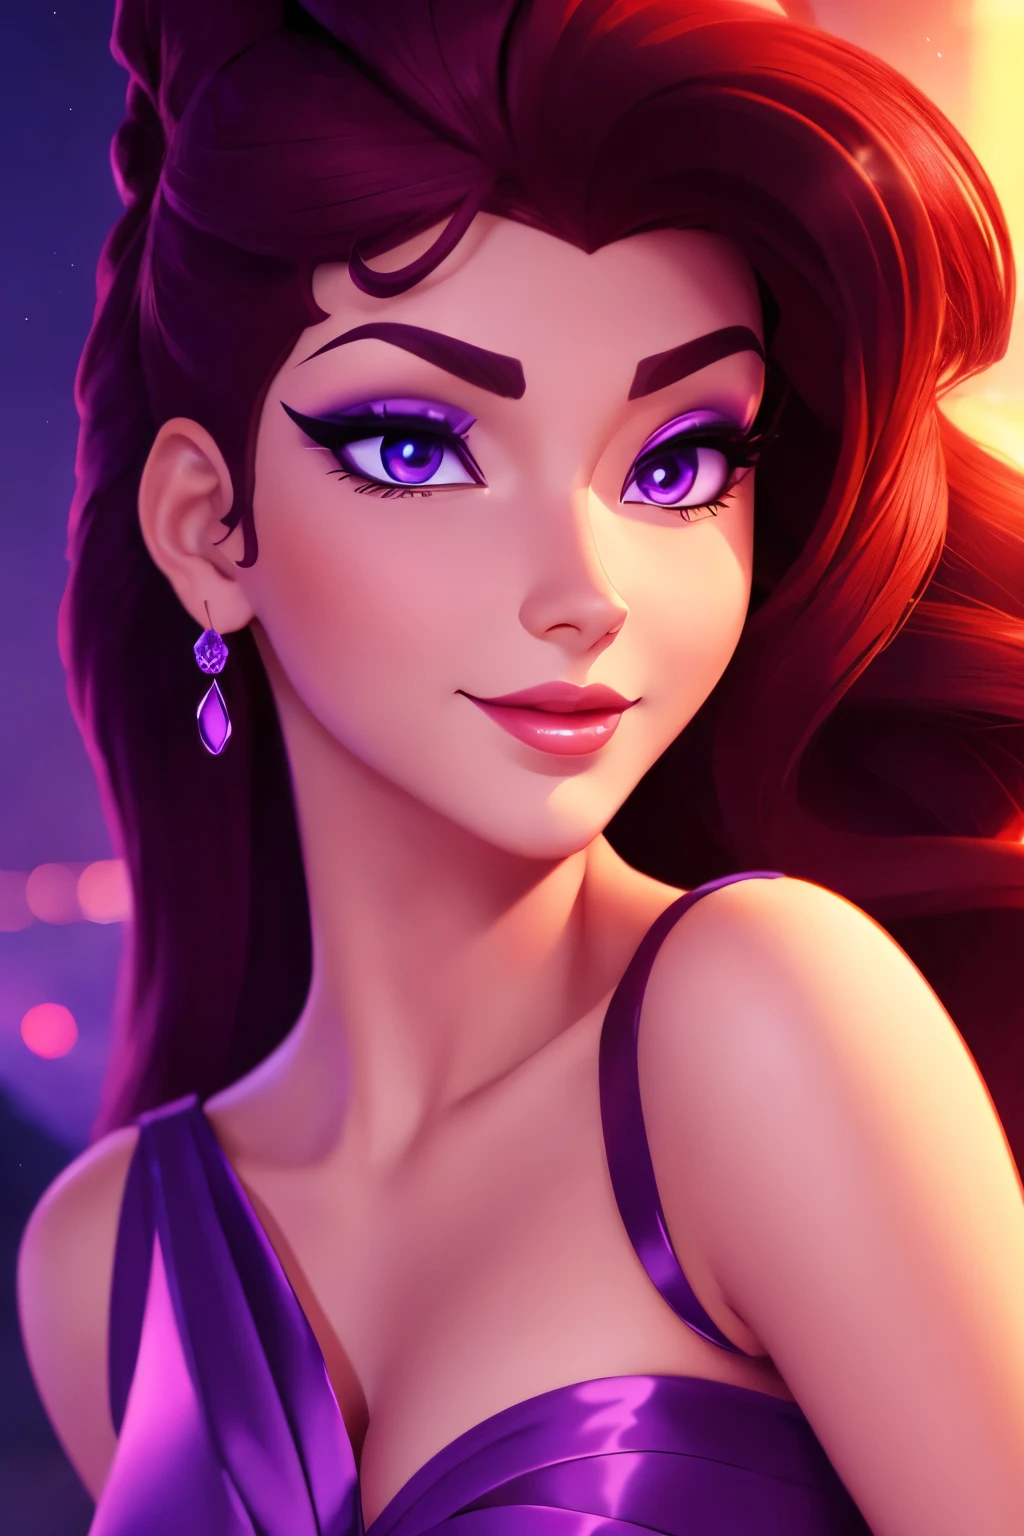 身穿紫色希腊连衣裙的黑发美女 Megara, 面部聚焦, 美丽的肖像, 细致的面部表情, 最好的质量, 官方艺术, 夜晚灯光背景浪漫, 闪亮的眼睛, 迪士尼动画风格, 最好的质量, 数字艺术, 二维